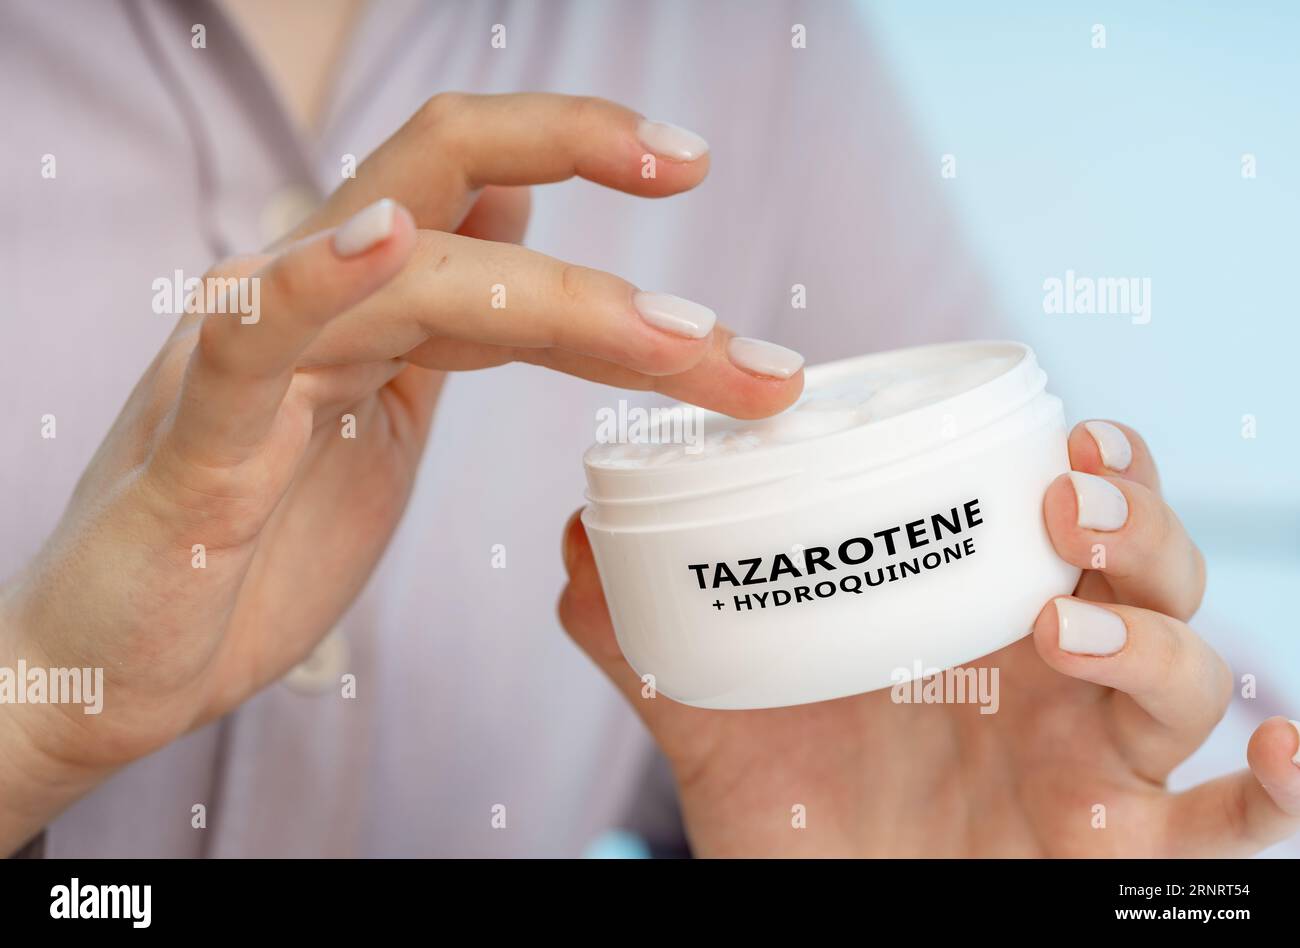 Tazaroten + Hydrochinon: Eine Kombinationscreme zur Behandlung von Melasma, Hyperpigmentierung und anderen Hautverfärbungen. Stockfoto